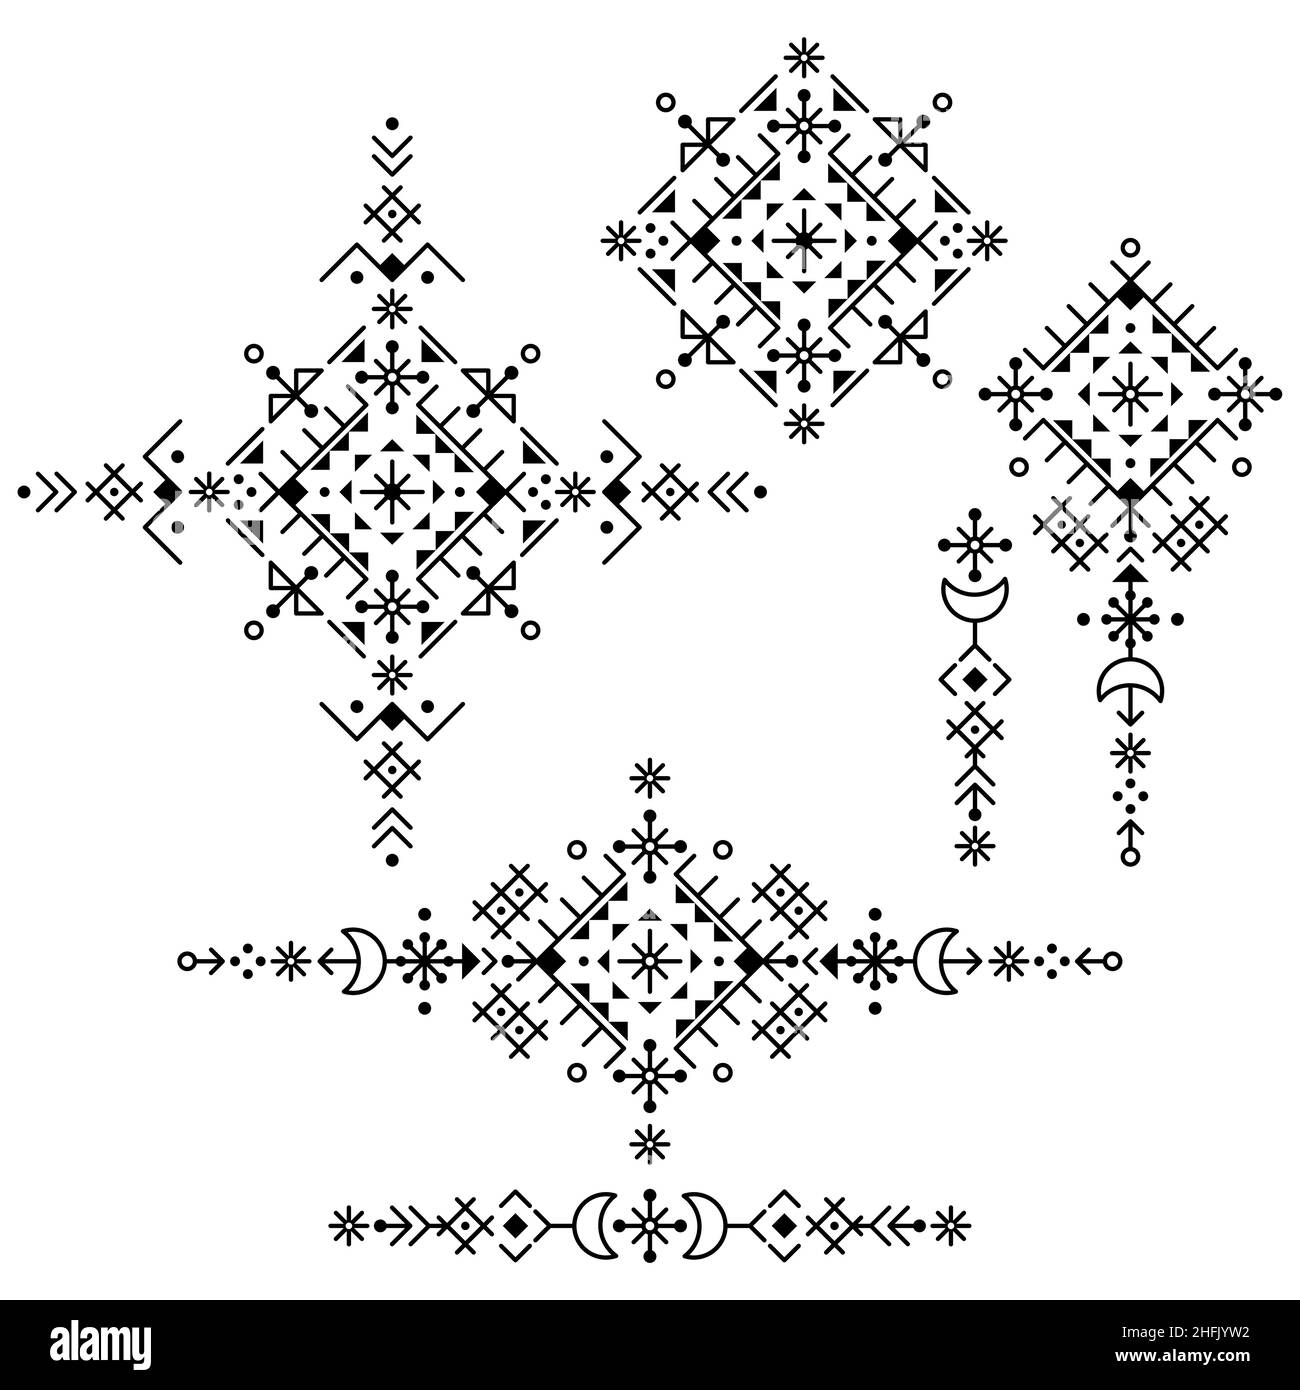 Geometrisches Tribal Line Art Vektor Design Set, ornamentale Minimal Patterns Kollektion in Schwarz und Weiß, inspiriert von der alten nordischen Wikinger Runenkunst Stock Vektor